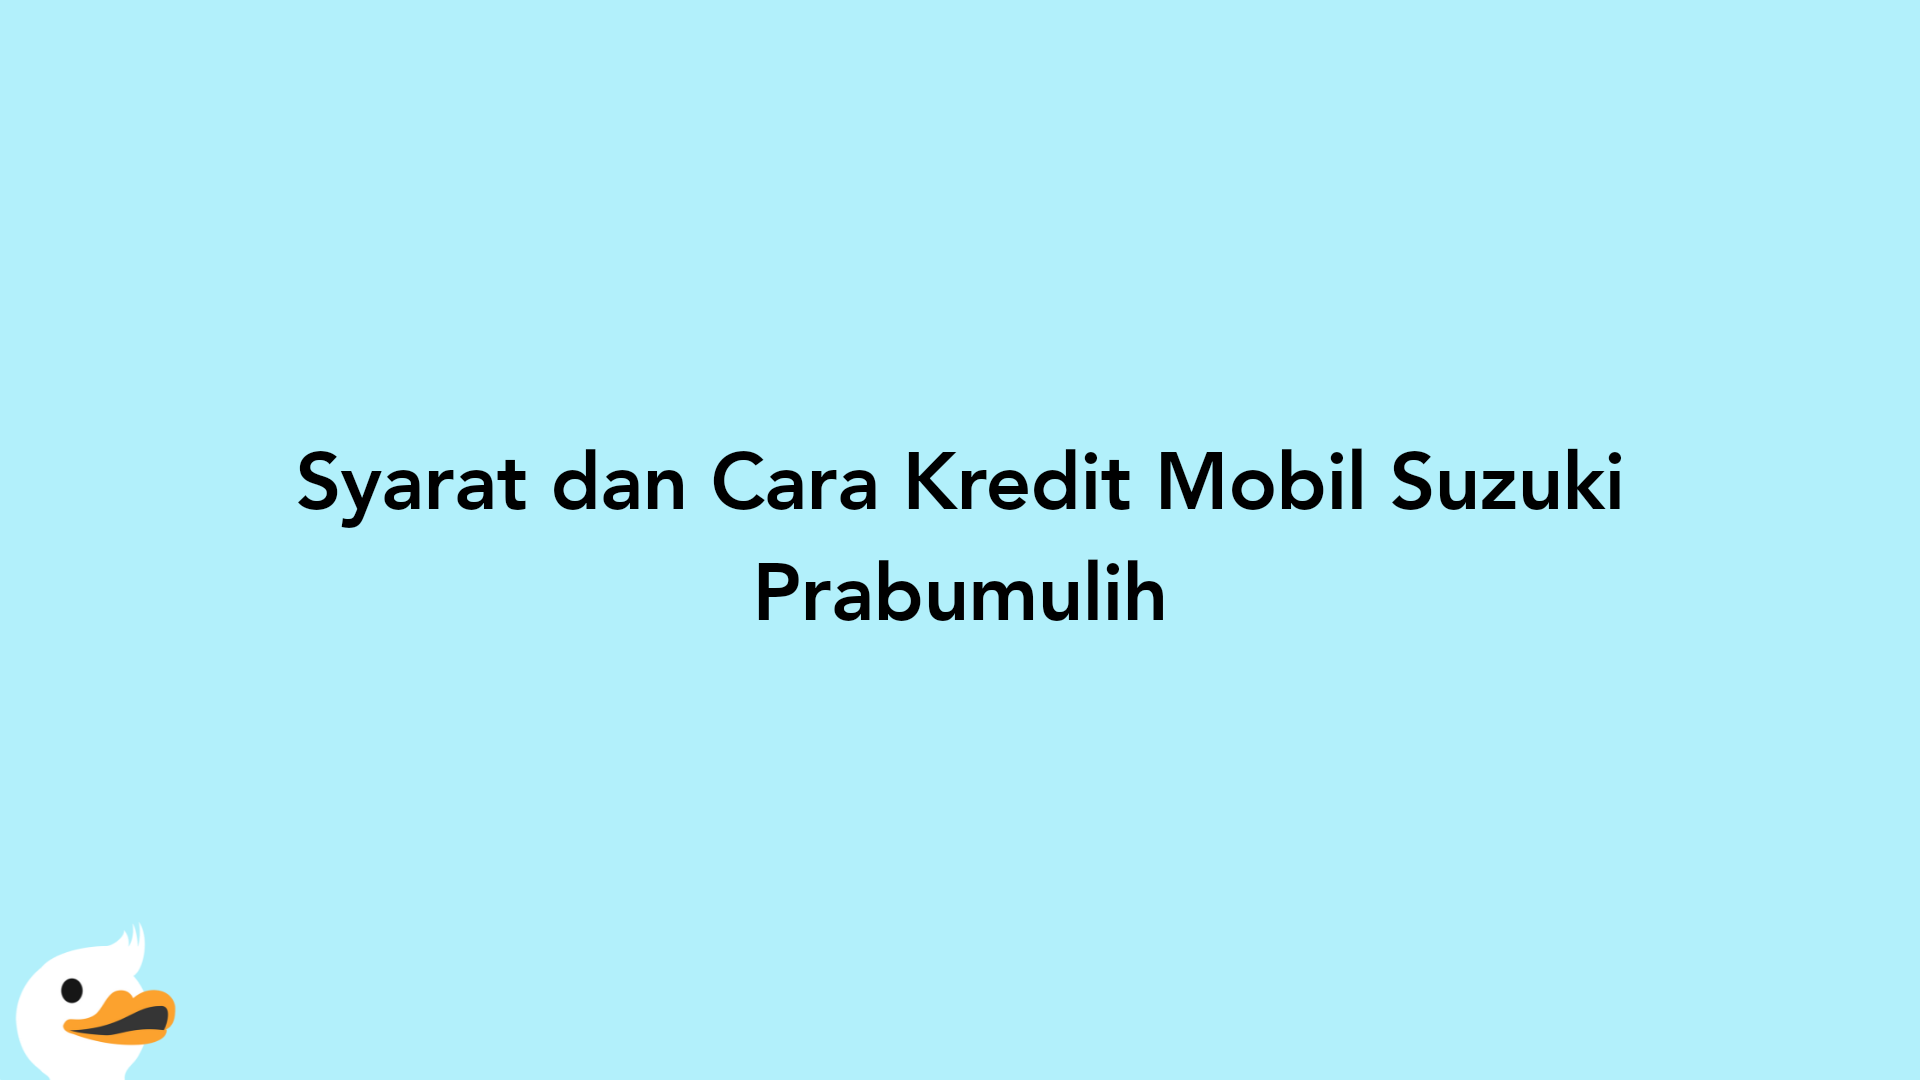 Syarat dan Cara Kredit Mobil Suzuki Prabumulih